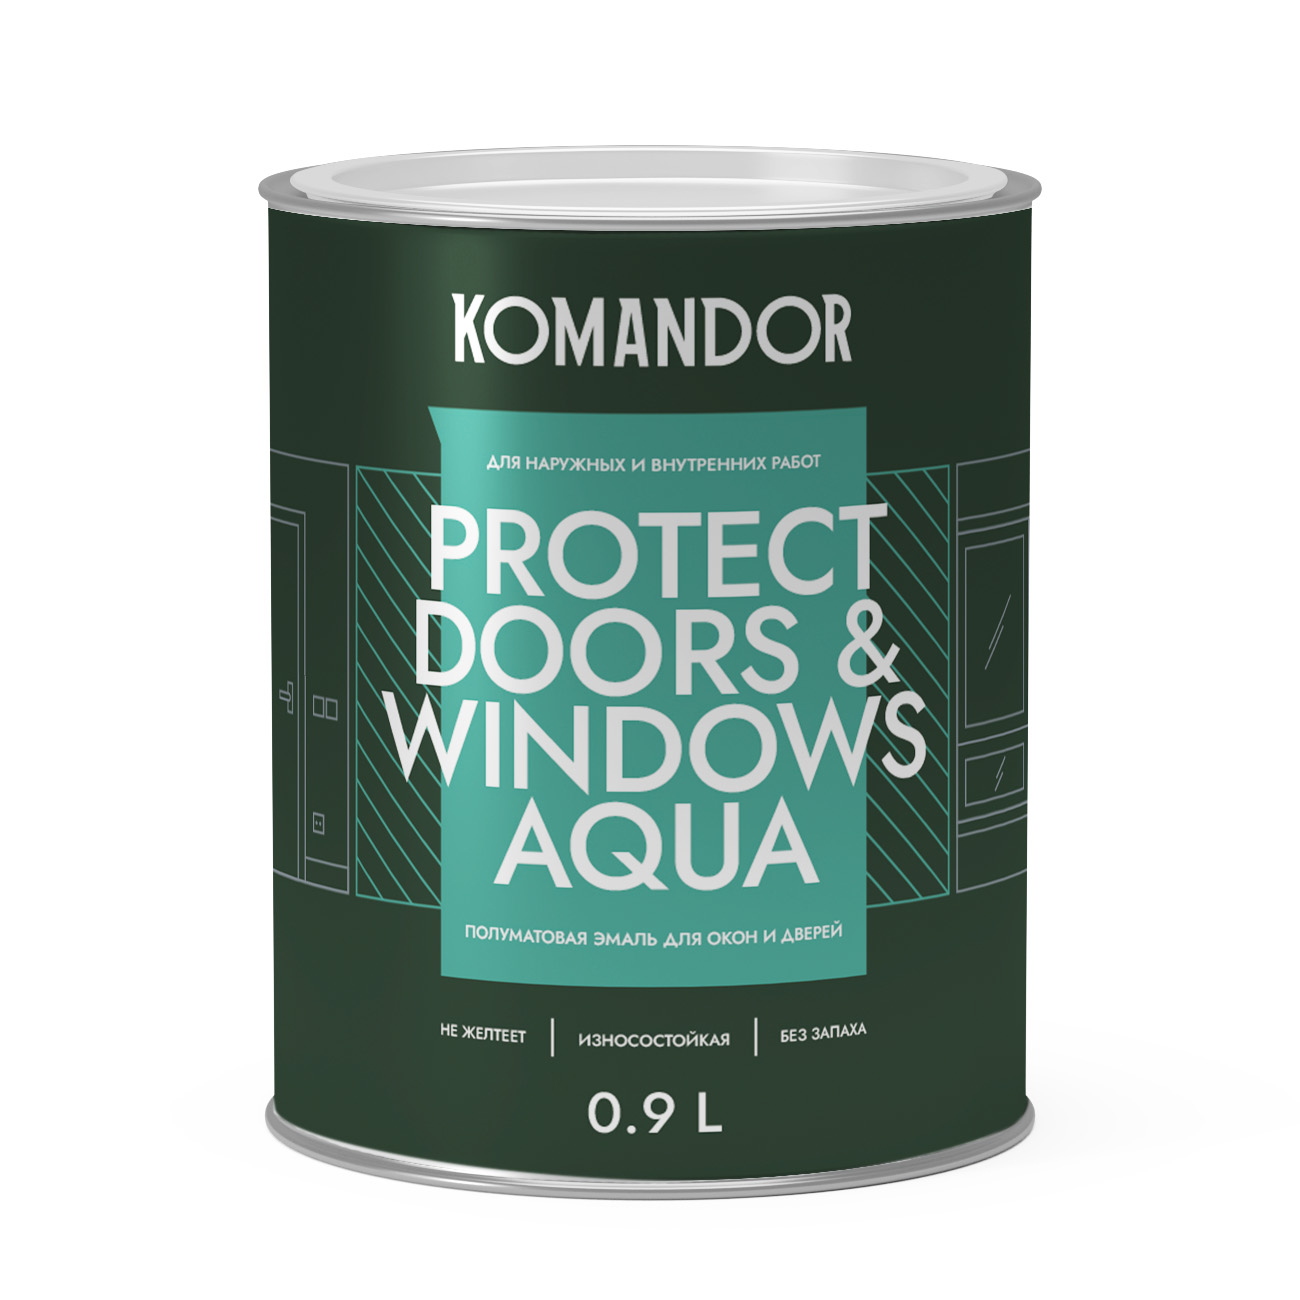 Эмаль для окон и дверей Komandor Protect Doors & Windows Aqua C S1313003001 полуматовая 0,9 л - фото 1